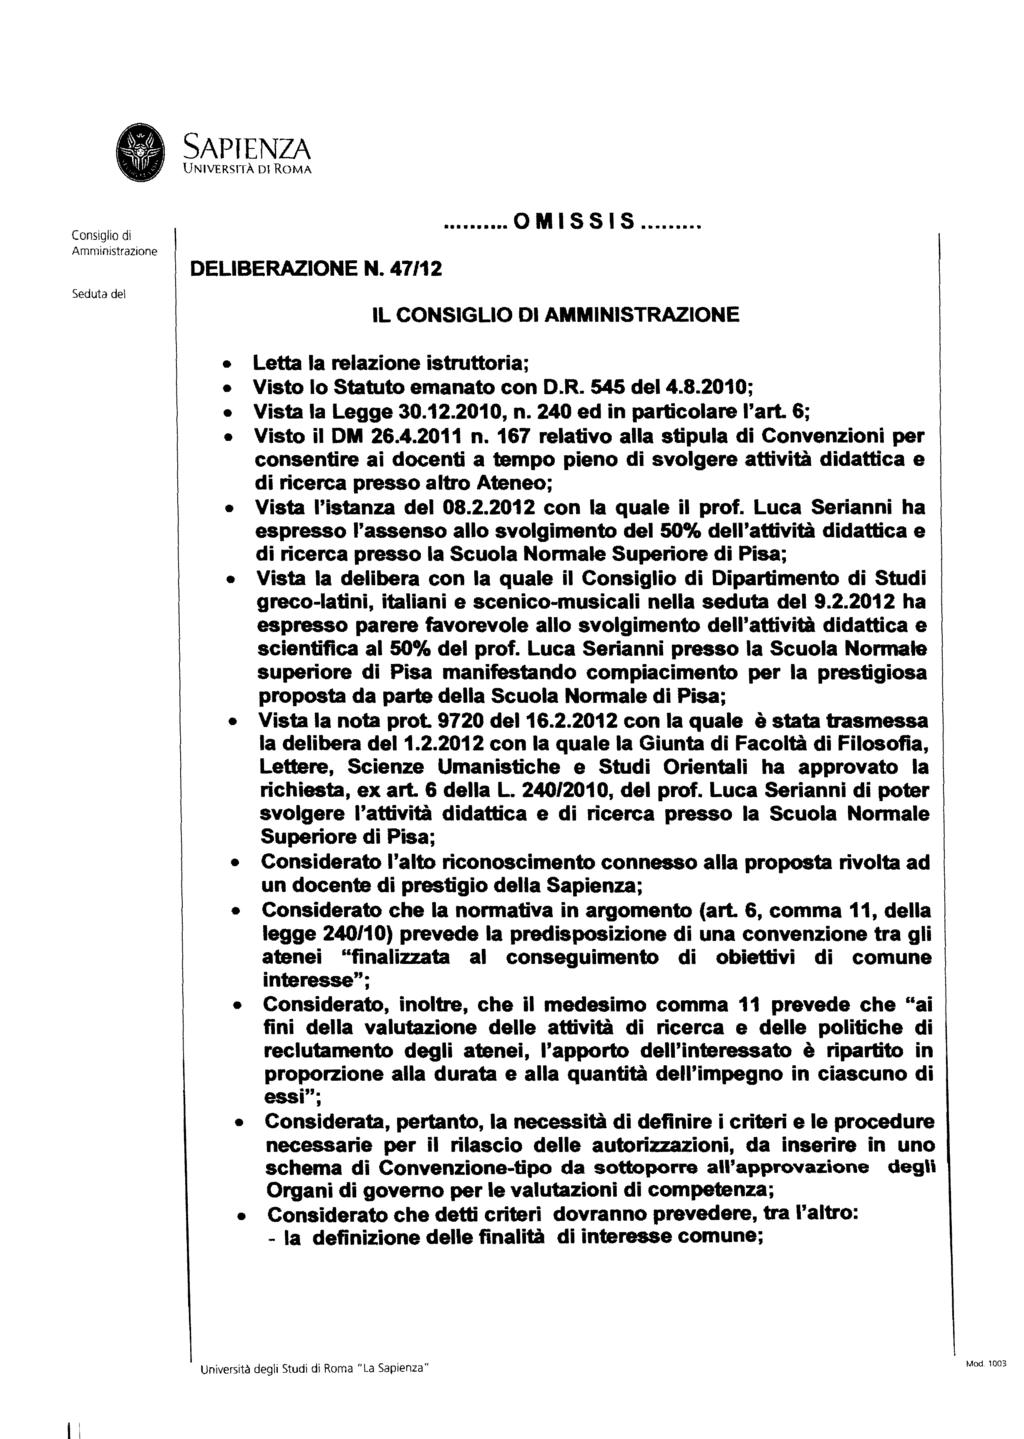 SAPENZA UNVERSTÀ D ROMA Consiglio di Amministrazione Seduta del DELBERAZONE N. 47/12 OMSSS...... l CONSGLO D AMMNSTRAZONE letta la relazione istruttoria; Visto lo Statuto emanato con D.R. 545 del 4.8.